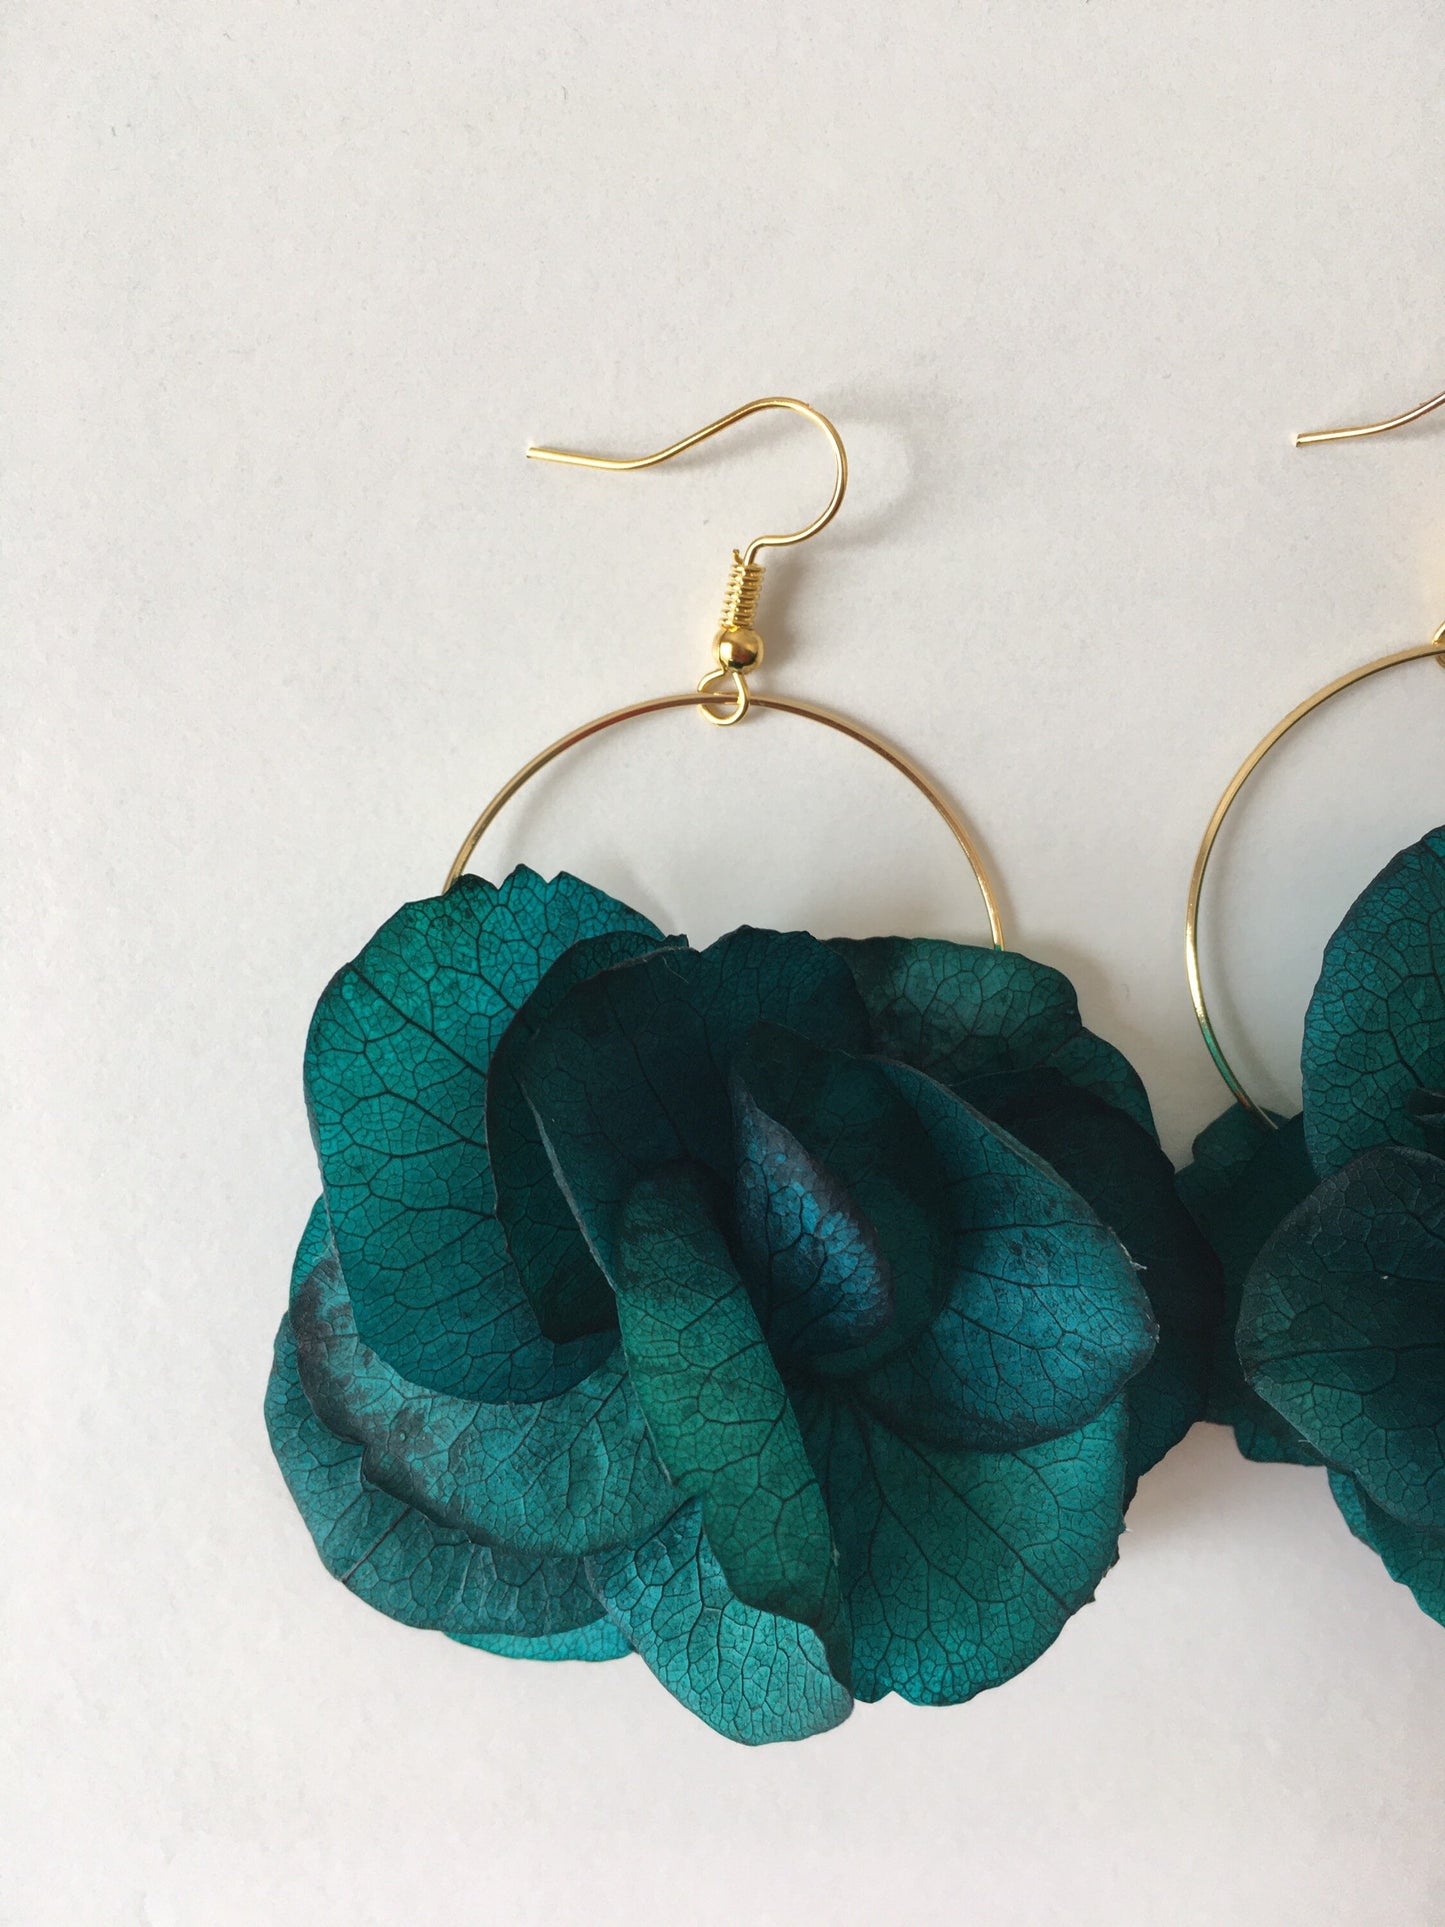 Emerald Green Gold Earrings Bridesmaids Gift, Bespoke Wedding Accessories, Real Flower Fine Jewellery UK, Flower Hoop Earrings Teal